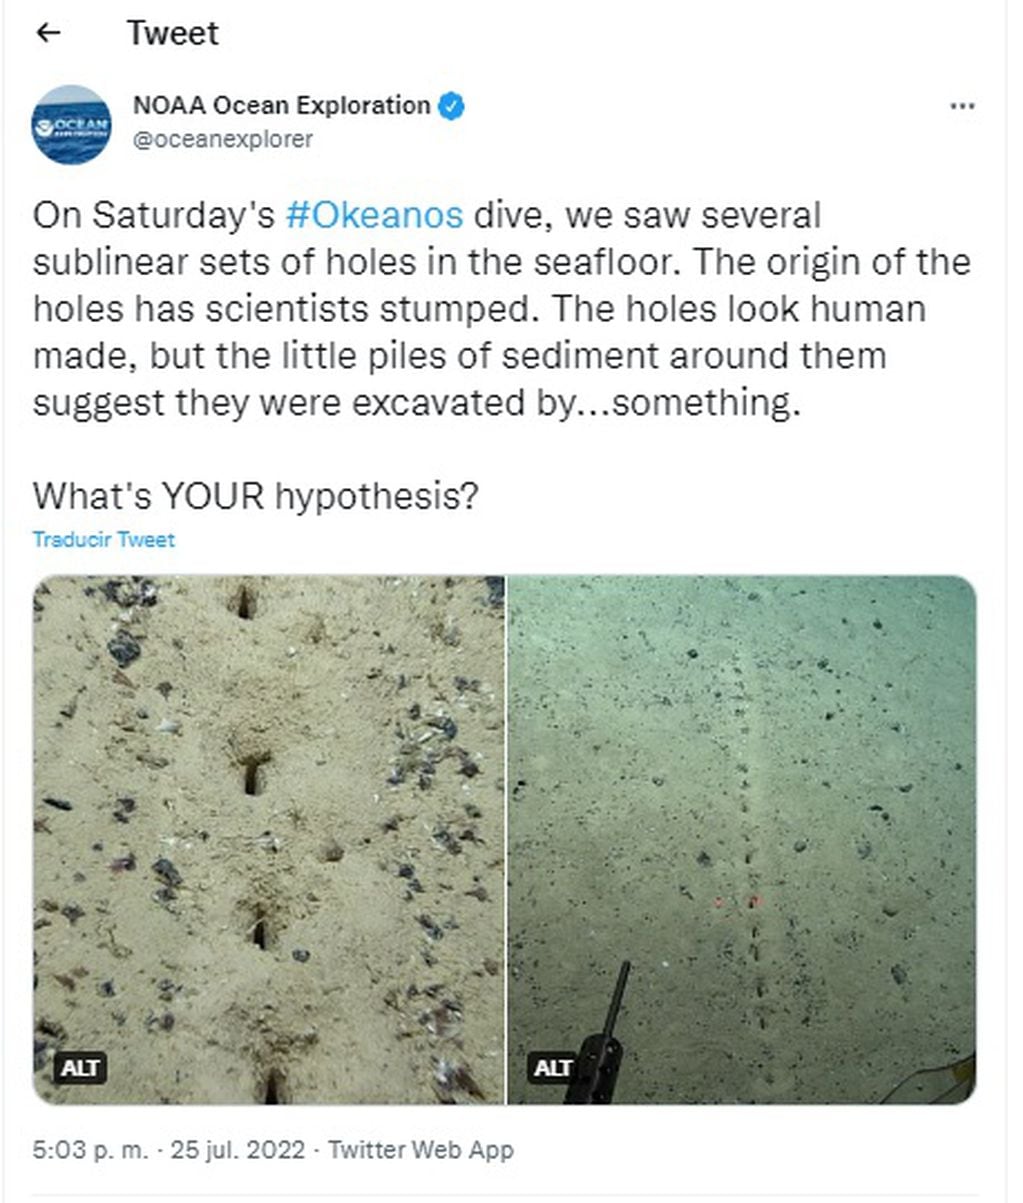 Científicos estadounidenses descubrieron unos sospechosos agujeros en el fondo del océano Atlántico y piden ayuda a la comunidad para saber qué es.